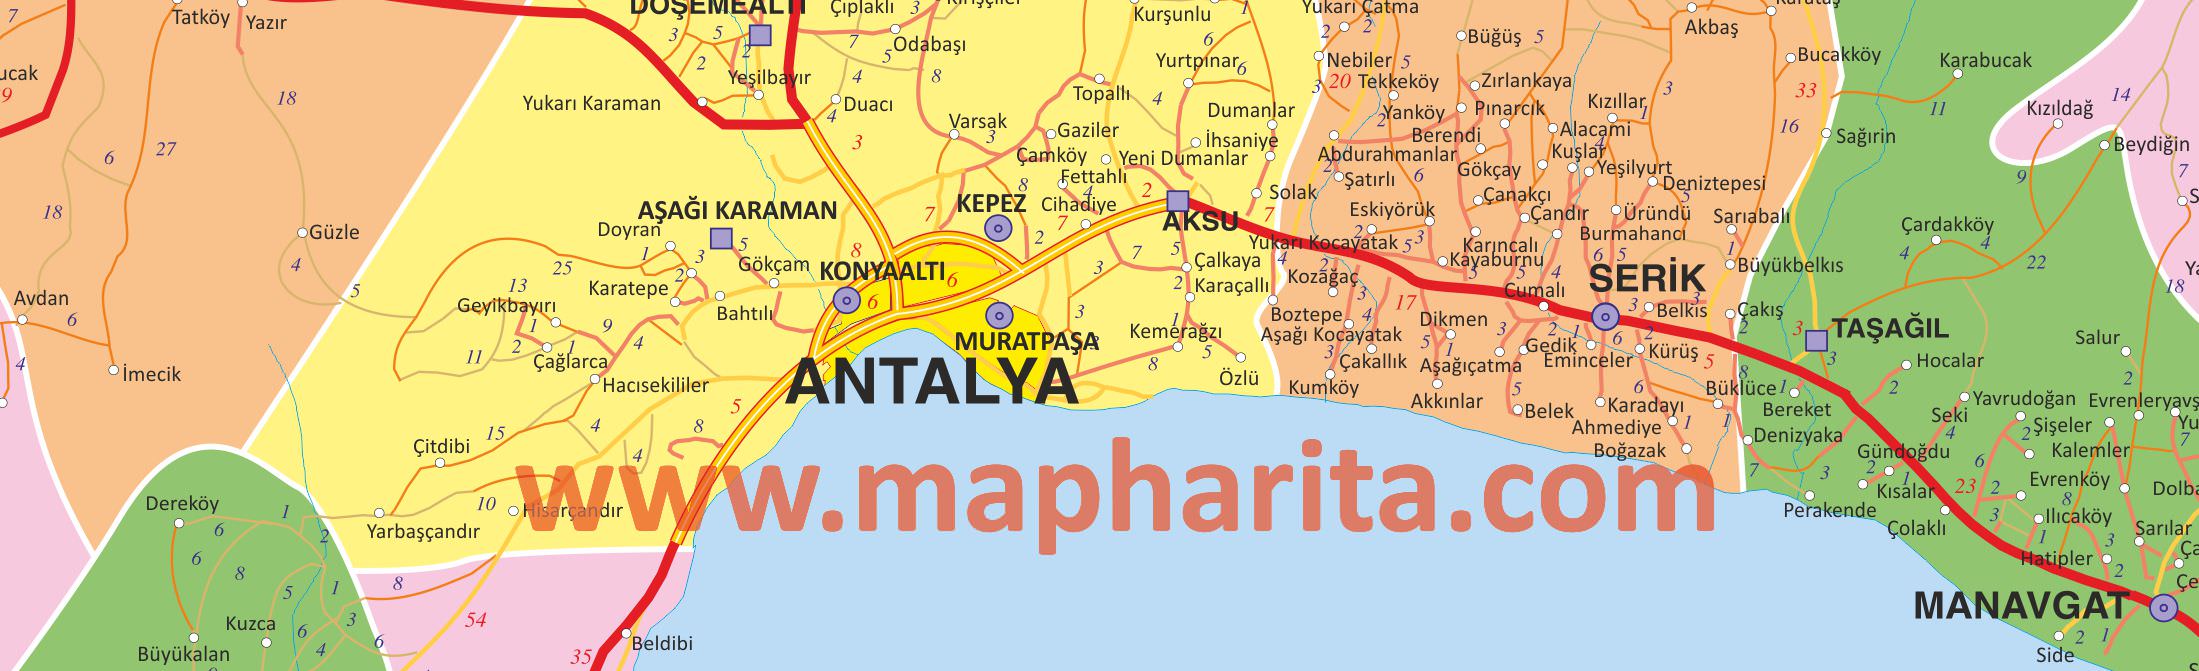 Antalya İl Haritası Yakından Örnek Görüntüsü